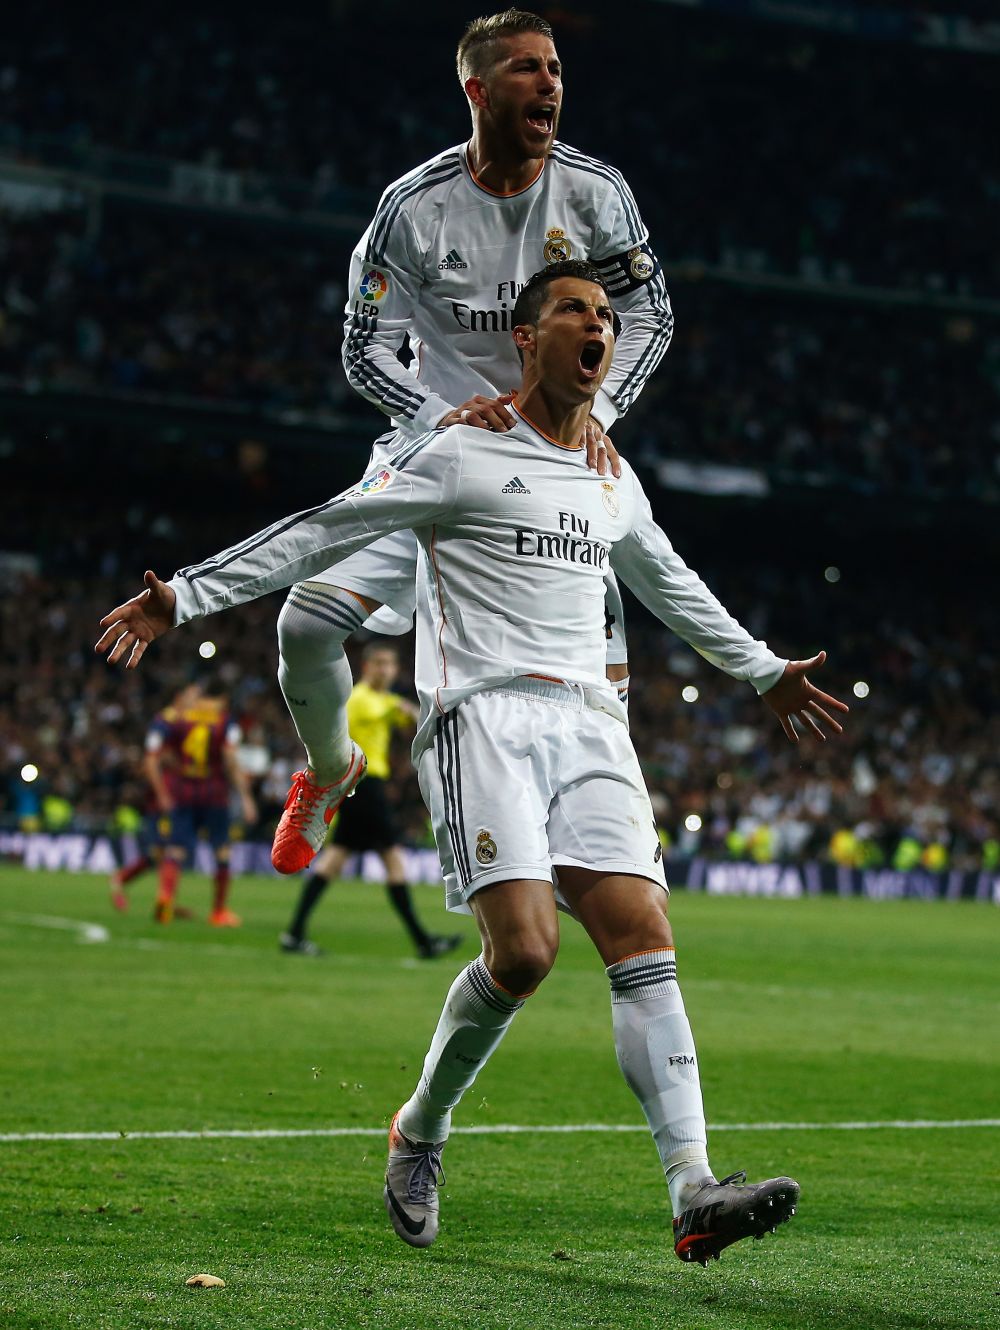 Ziua in care Messi l-a invins pe Ronaldo! Cele mai tari imagini din El Clasico! GALERIE FOTO:_13